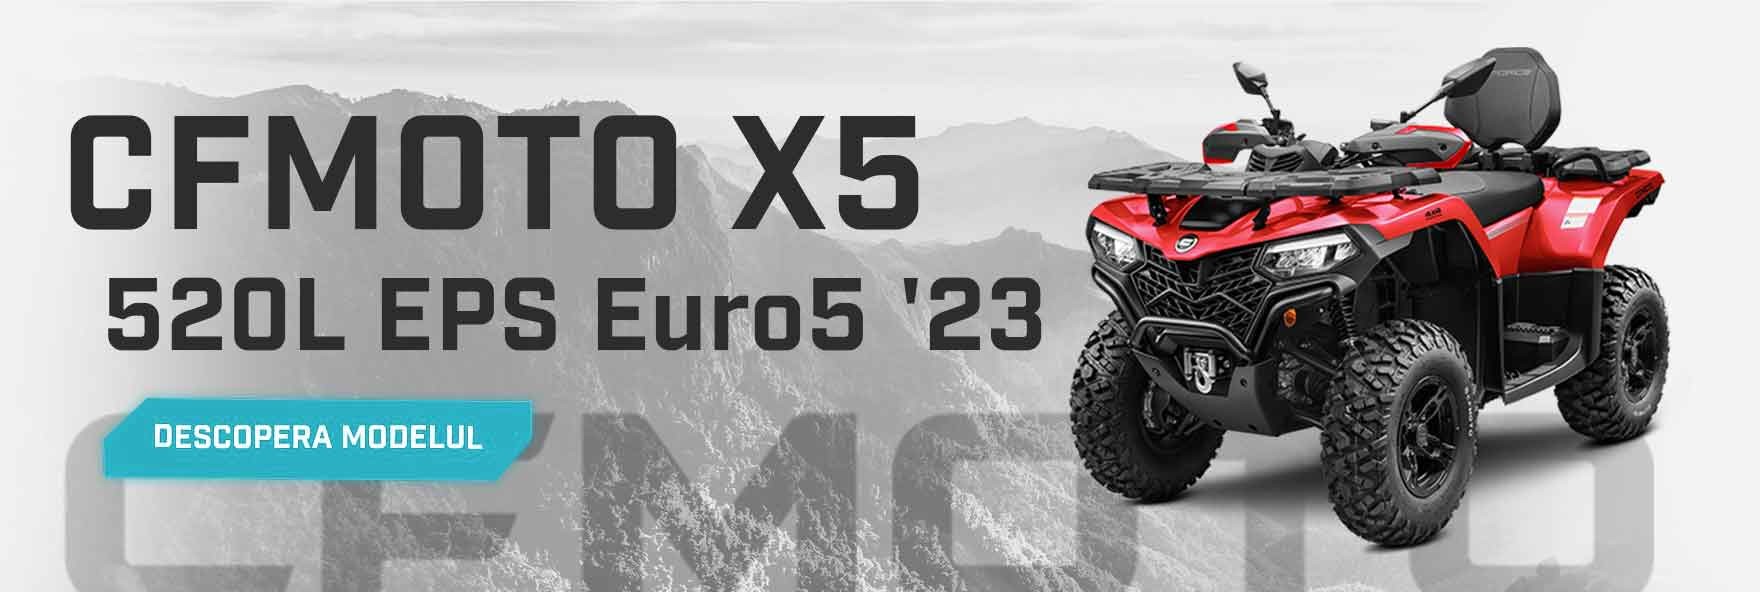 CFMOTO X5 CFORCE 520L EPS Euro5 '23